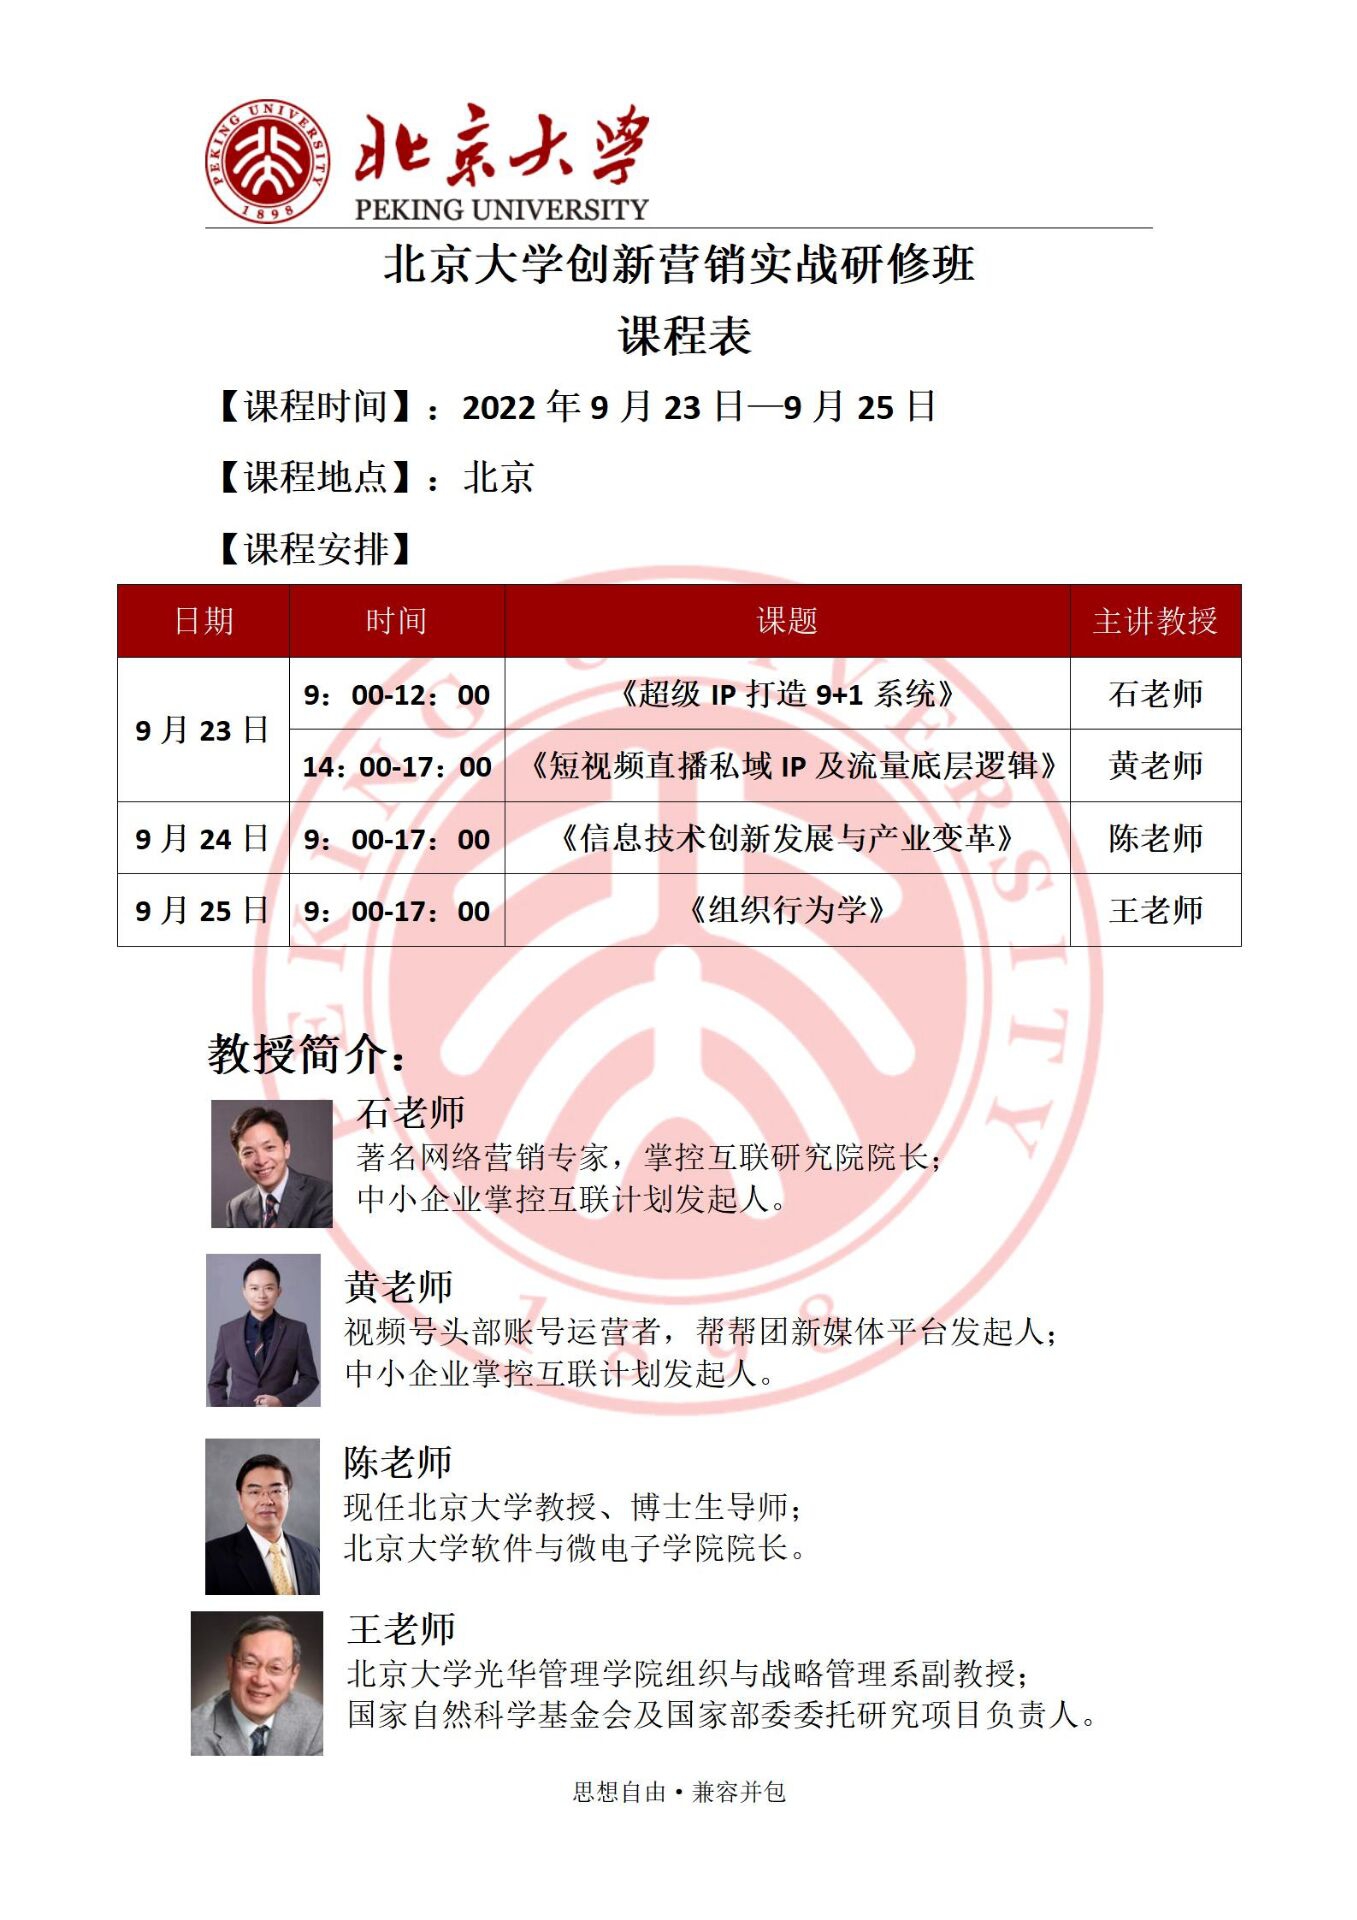 北京大学创新营销实战研修班2022年9月开课通知